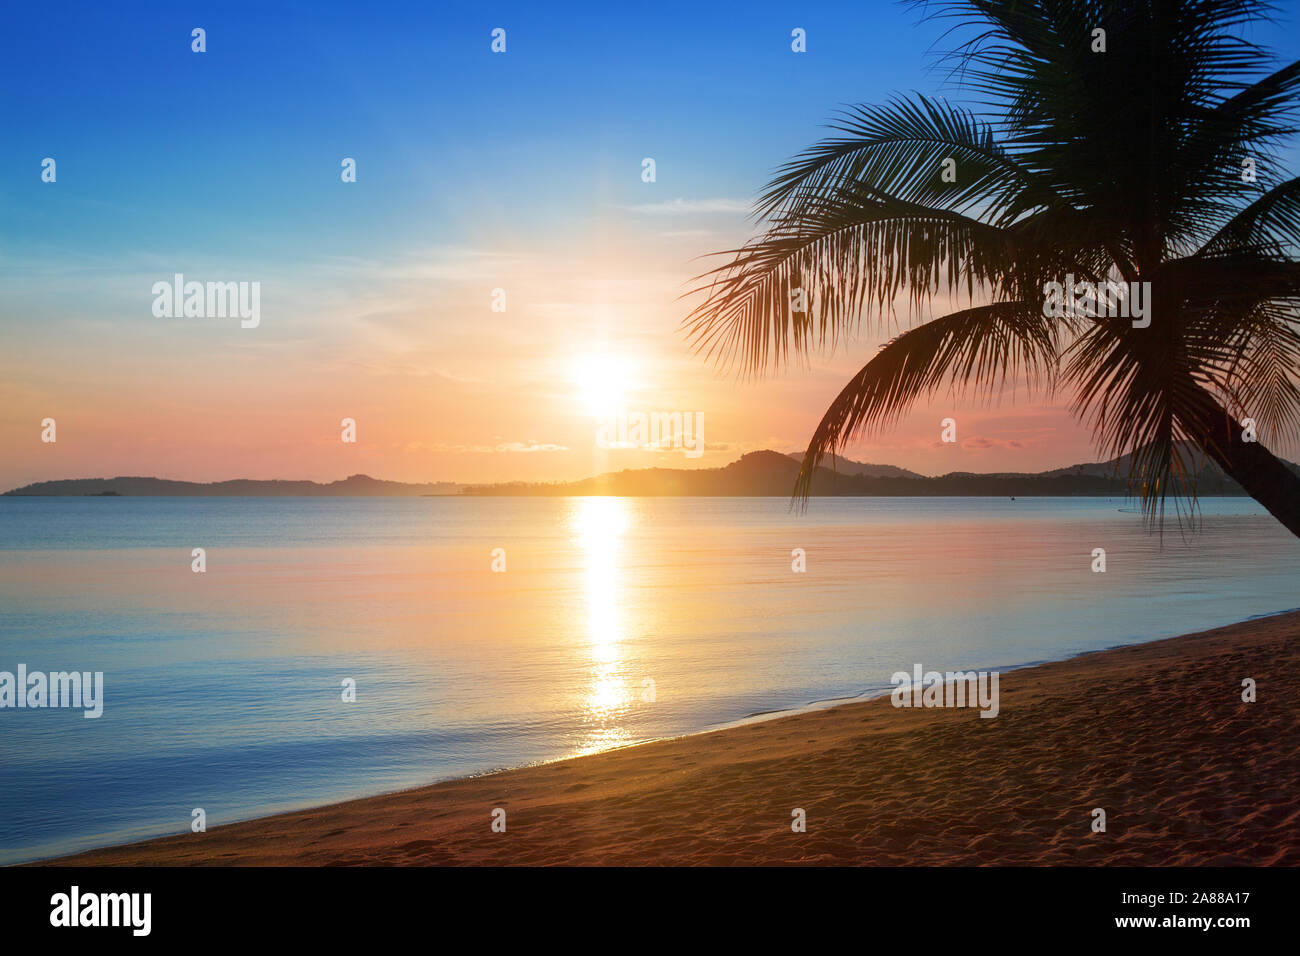 Schönen Sonnenaufgang auf dem Tropical Paradise Island Beach Landschaft, malerischen Sonnenuntergang am Meer goldene Sonne, blauer Himmel, rosa Wolken Hintergrund, Sonnenlicht Stockfoto